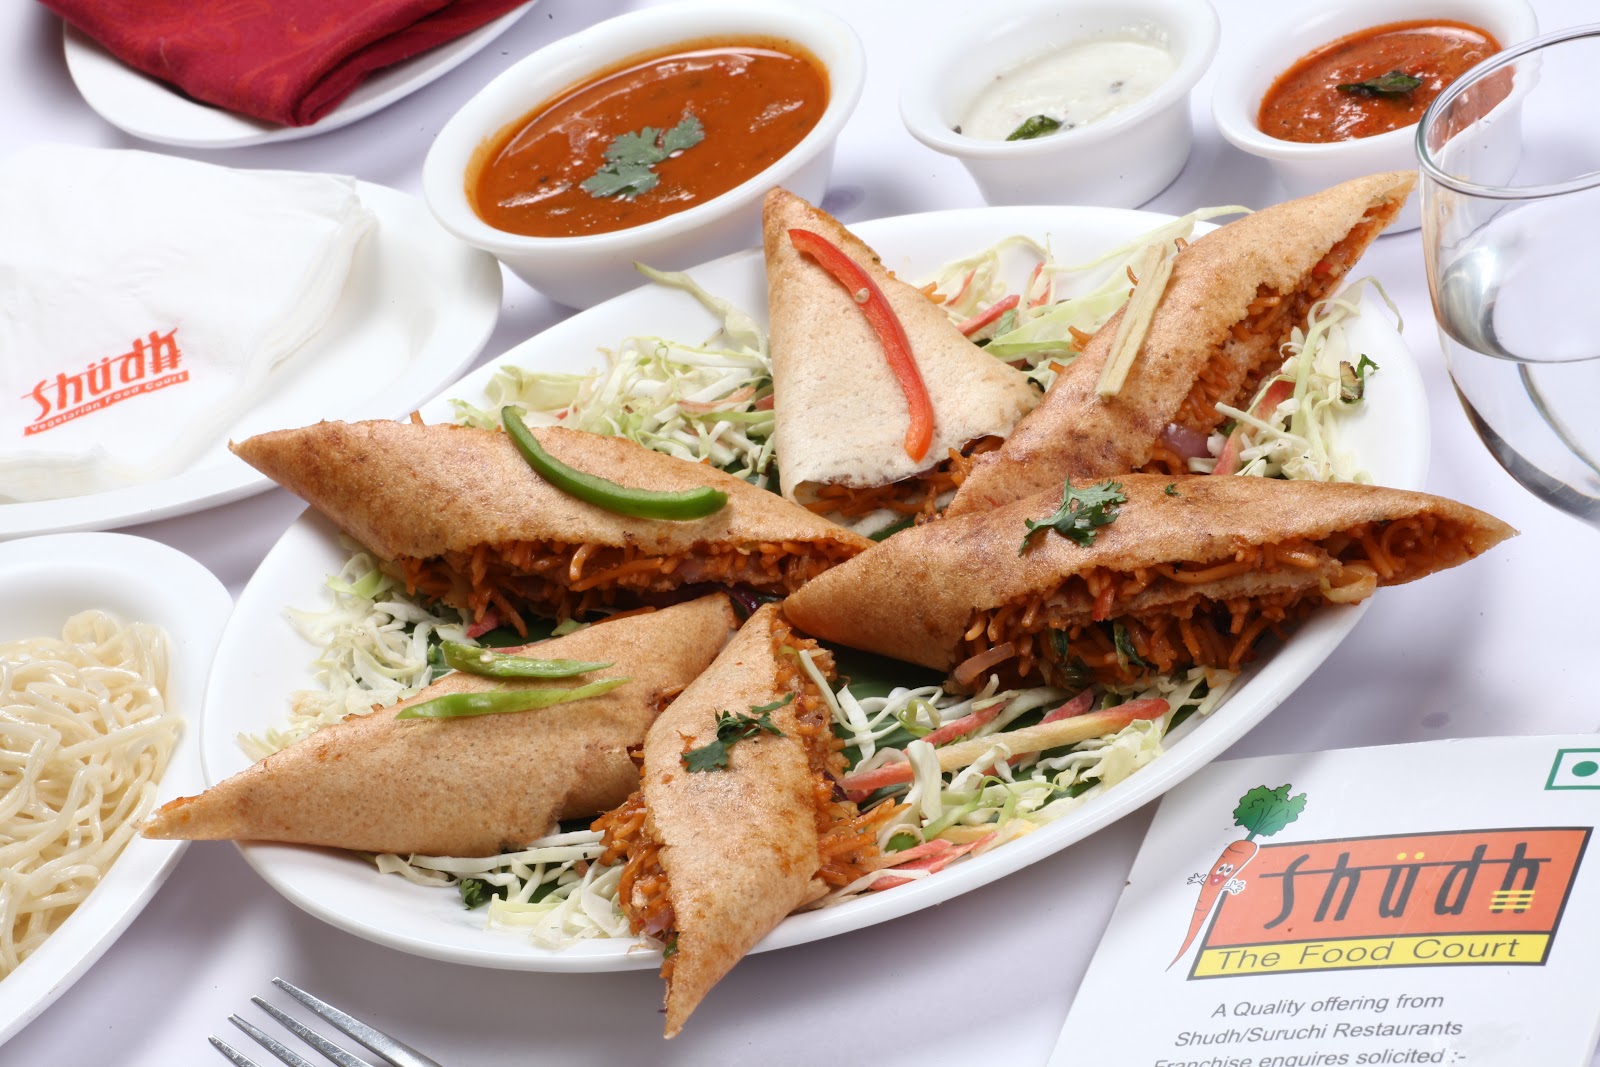 Shudh Restaurant - Vegetarian Restaurant: Hot Veg Food in monsoon New